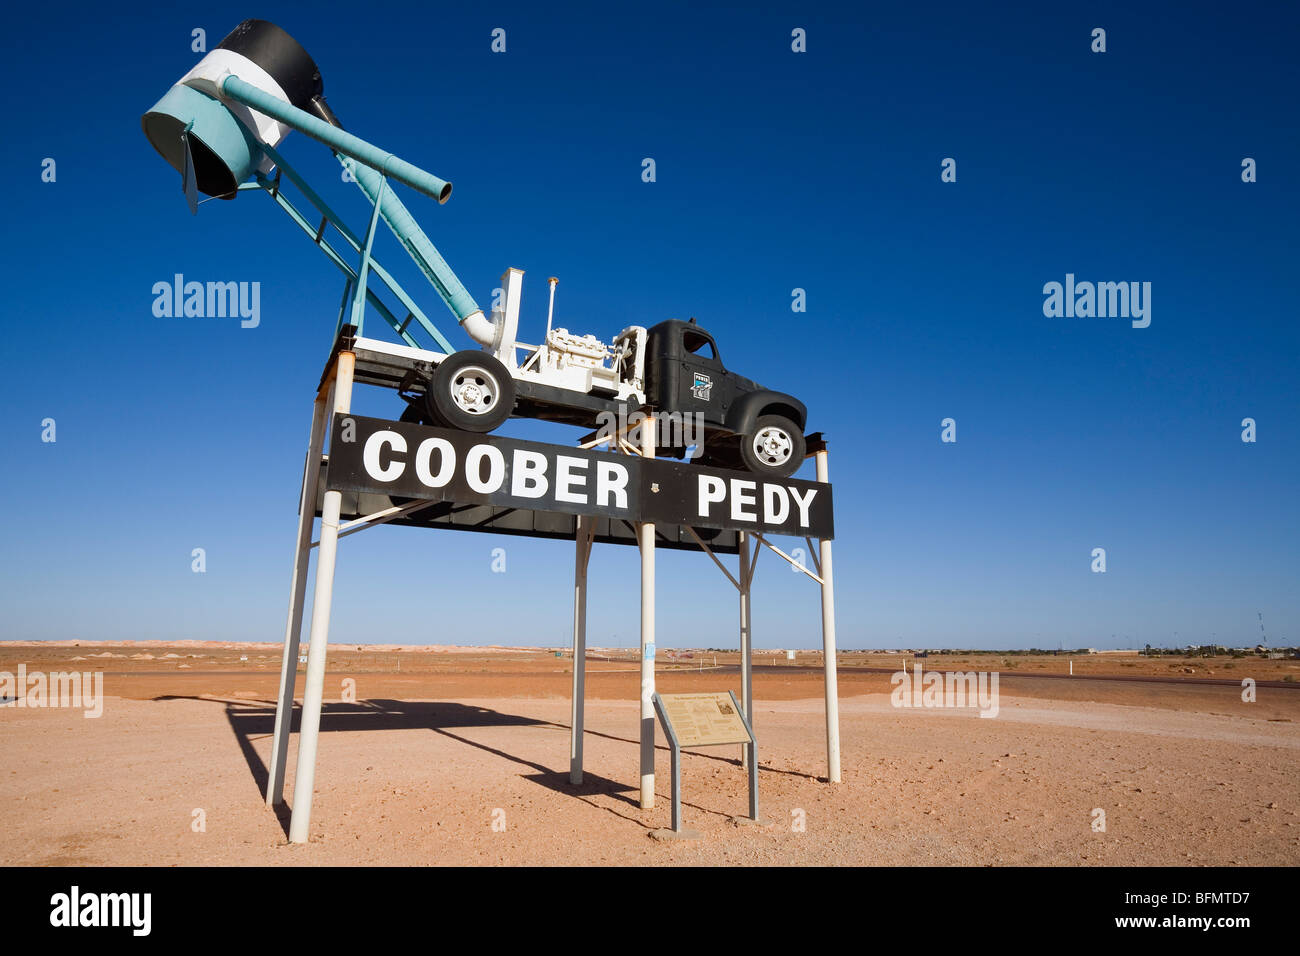 L'Australie, l'Australie du Sud, Coober Pedy. Un ventilateur (camion utilisé pour extraire la saleté des mines d'opale) accueille des visiteurs de la ville. Banque D'Images